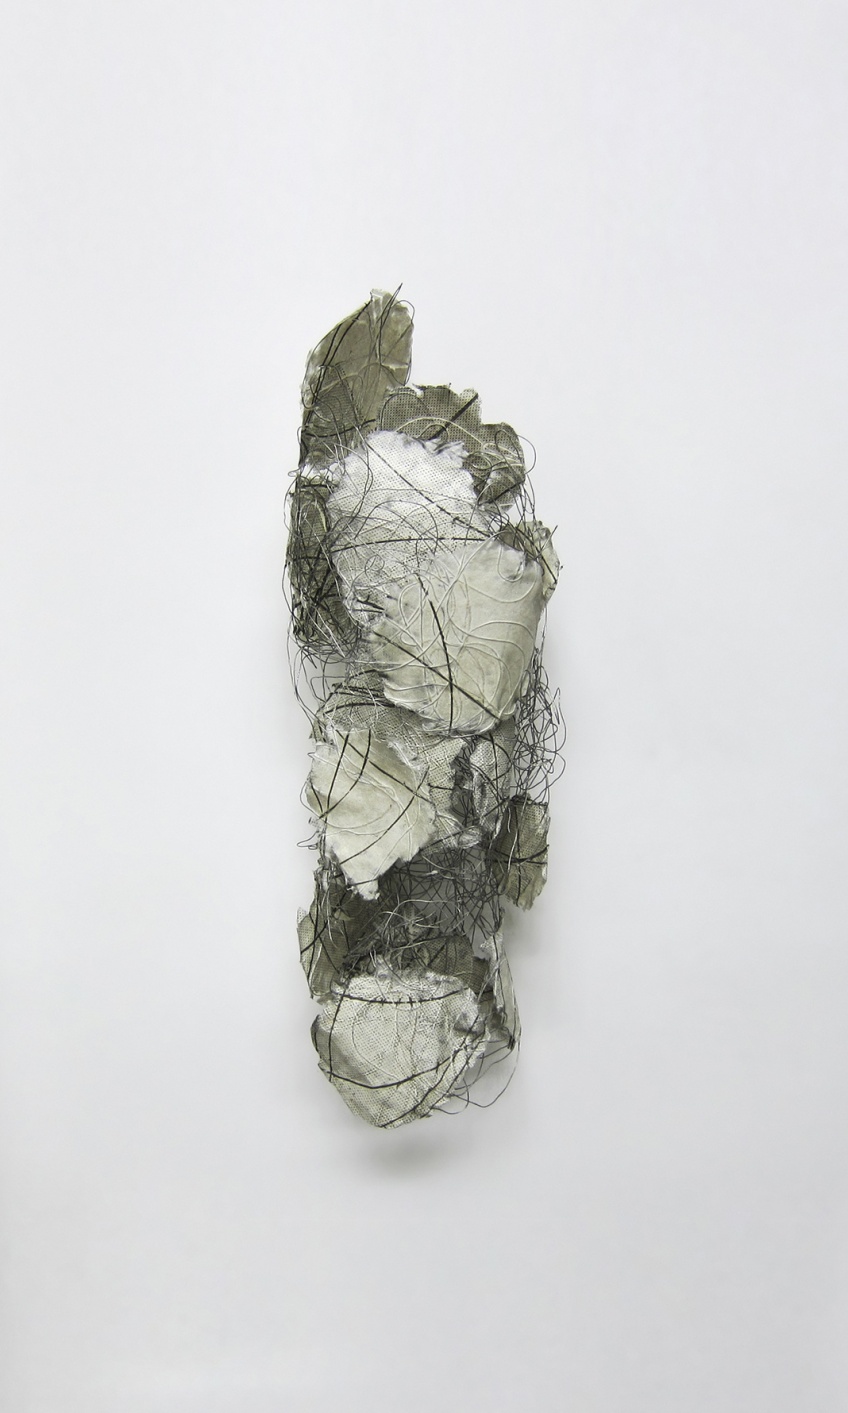 Wiring, 2014, papel feito  mo e arame de ao, 67 x 23 x 20 cm 